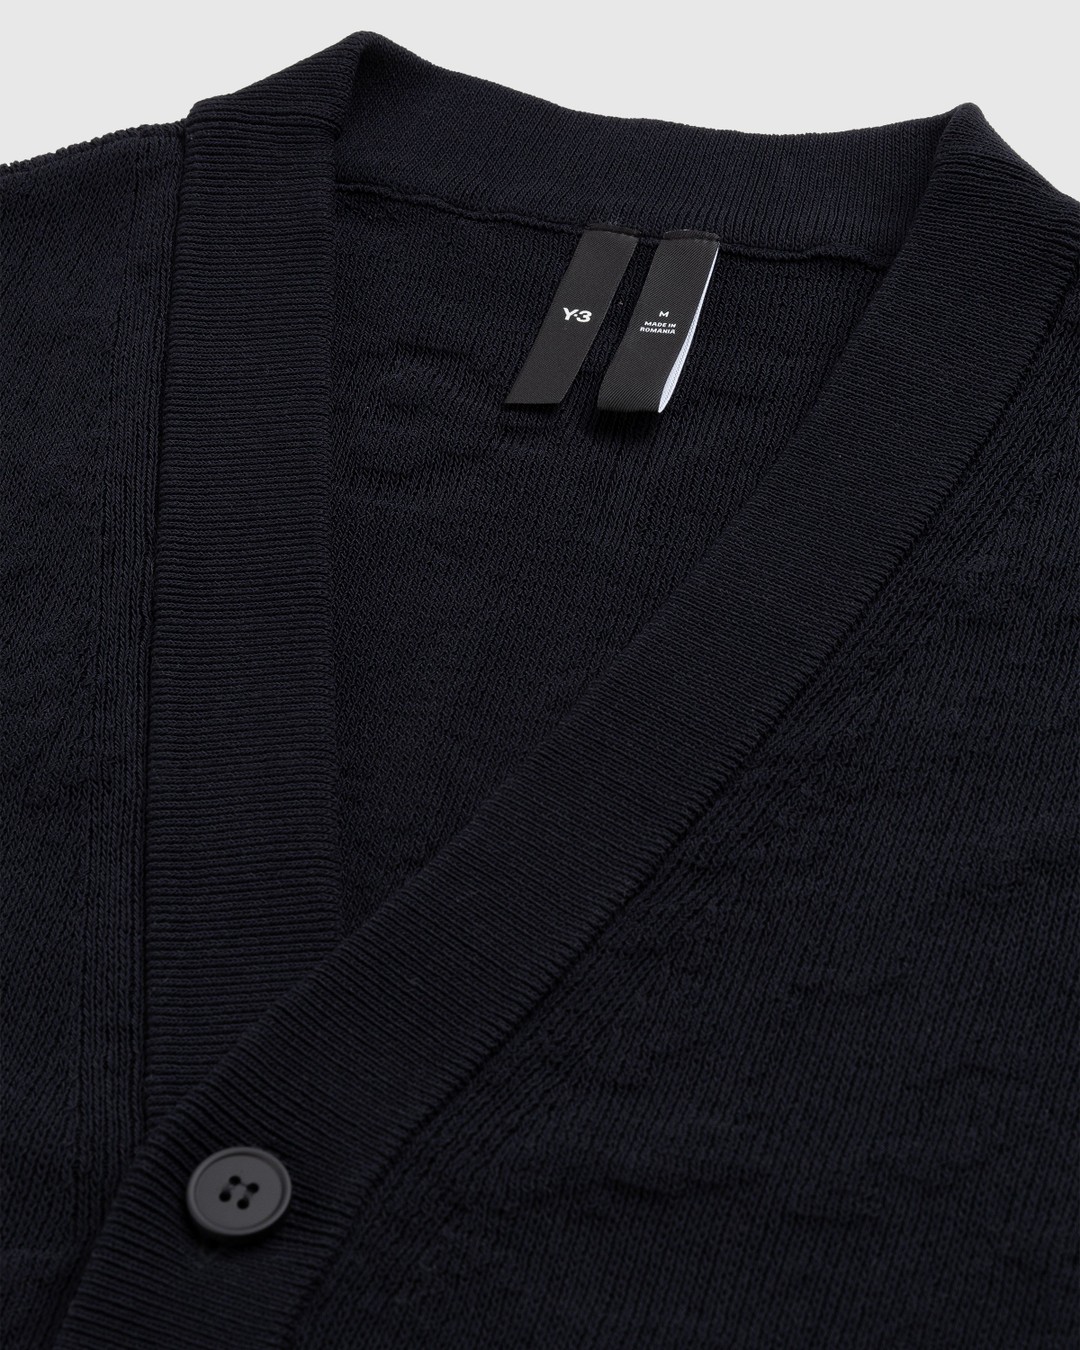 Y-3 – Knit Cardigan Black | Highsnobiety Shop